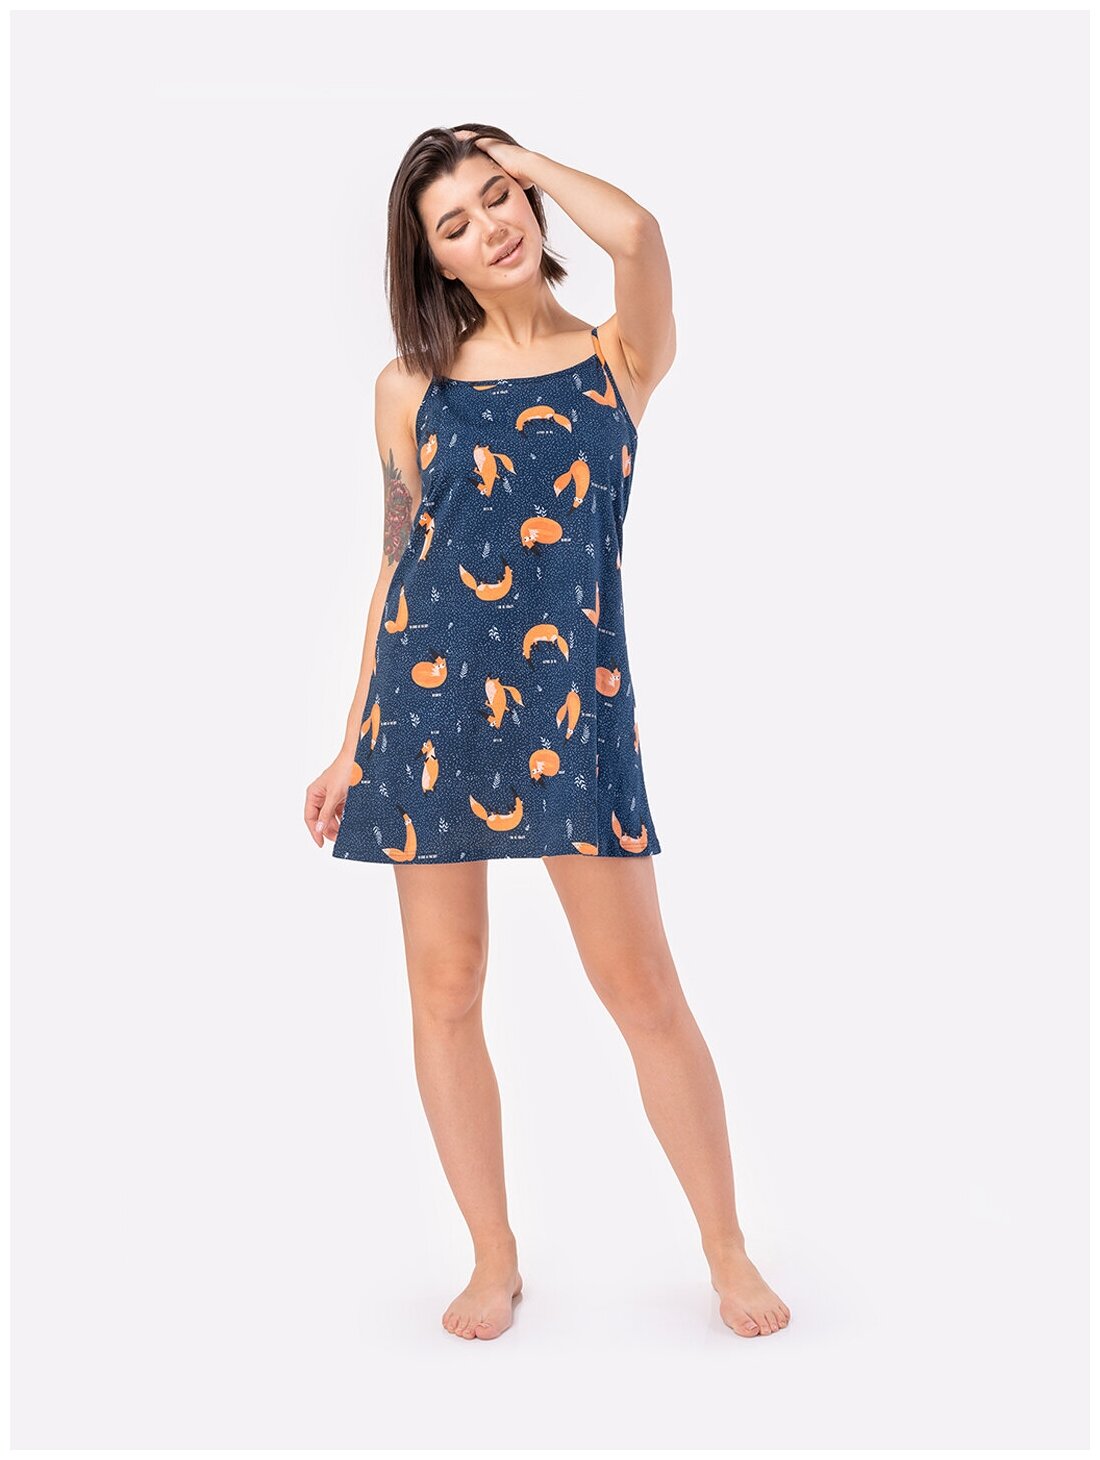 Сорочка женская HappyFox, HF3000MSP размер 44, цвет лисы,т.синий - фотография № 4